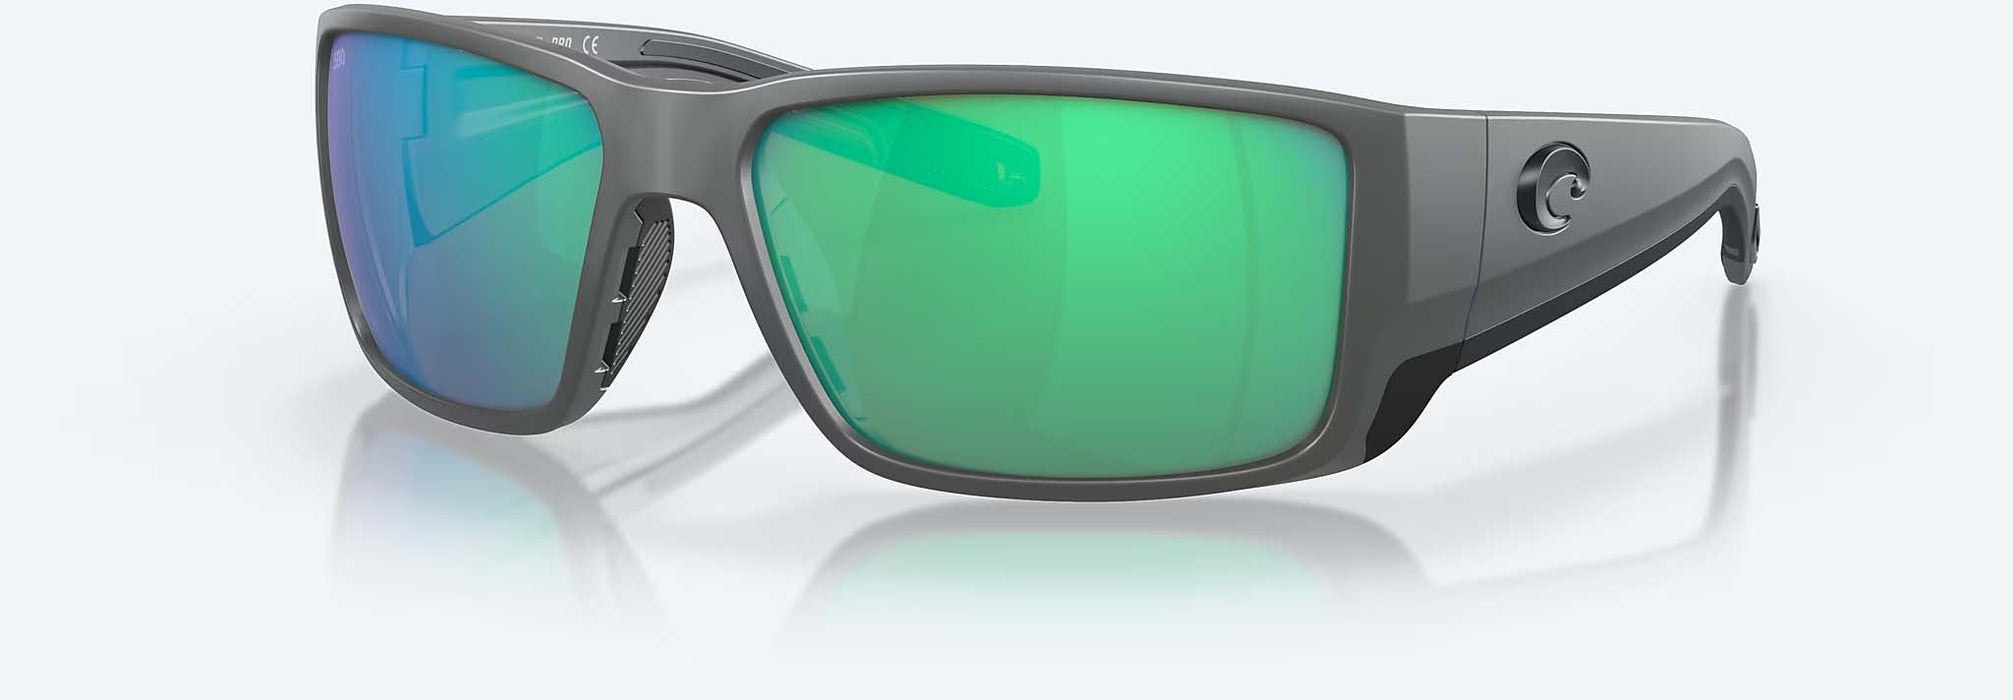 Costa Del Mar Blackfin Pro Sunglasses Matte Gray; Green Mirror 580G